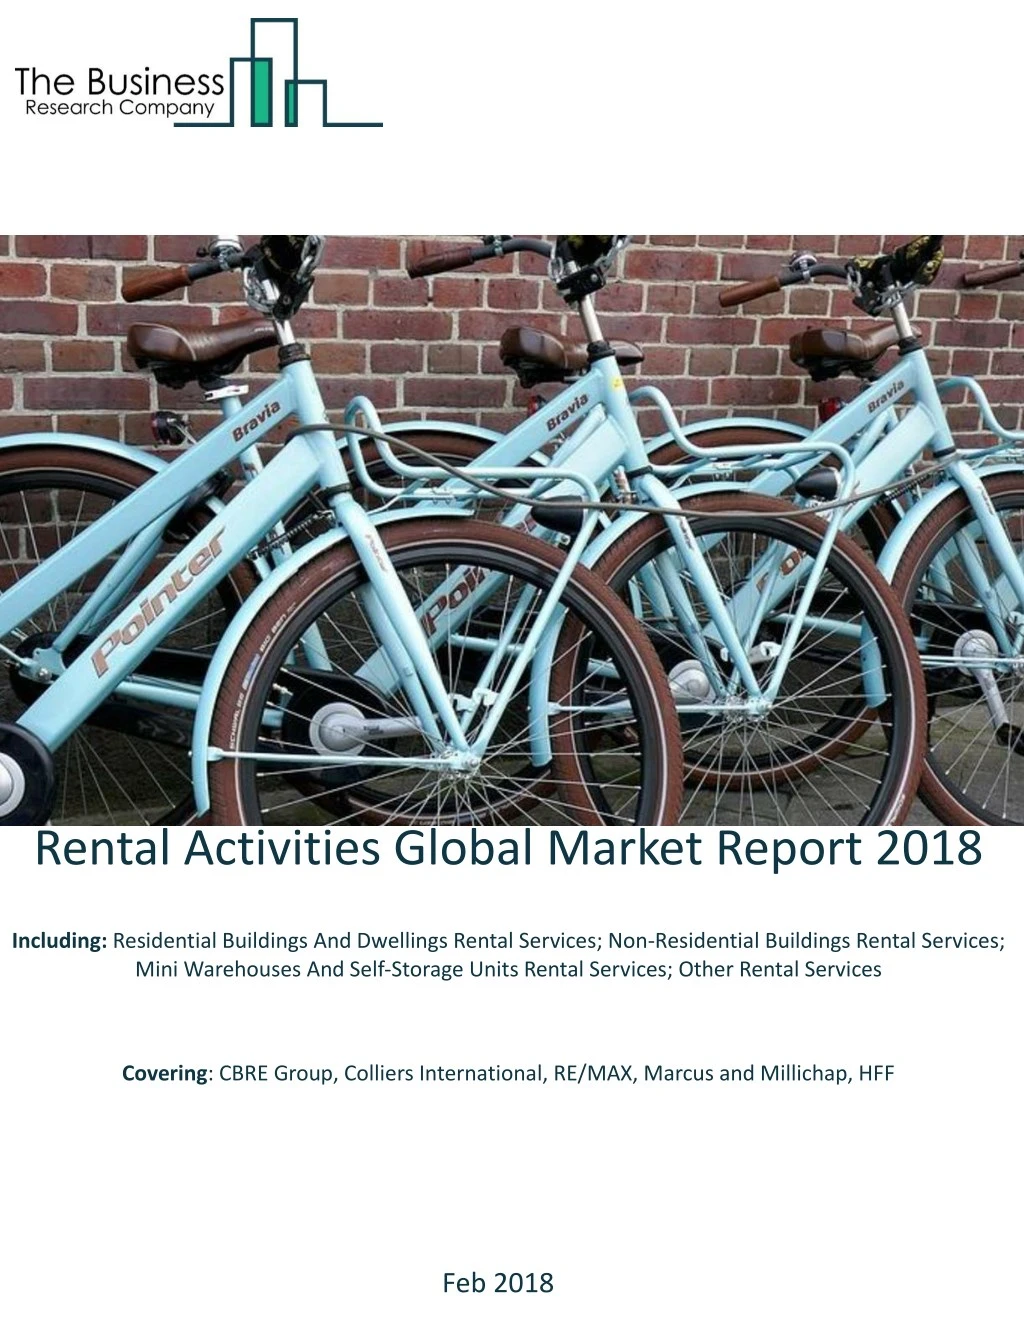 rental activities global market report 2018